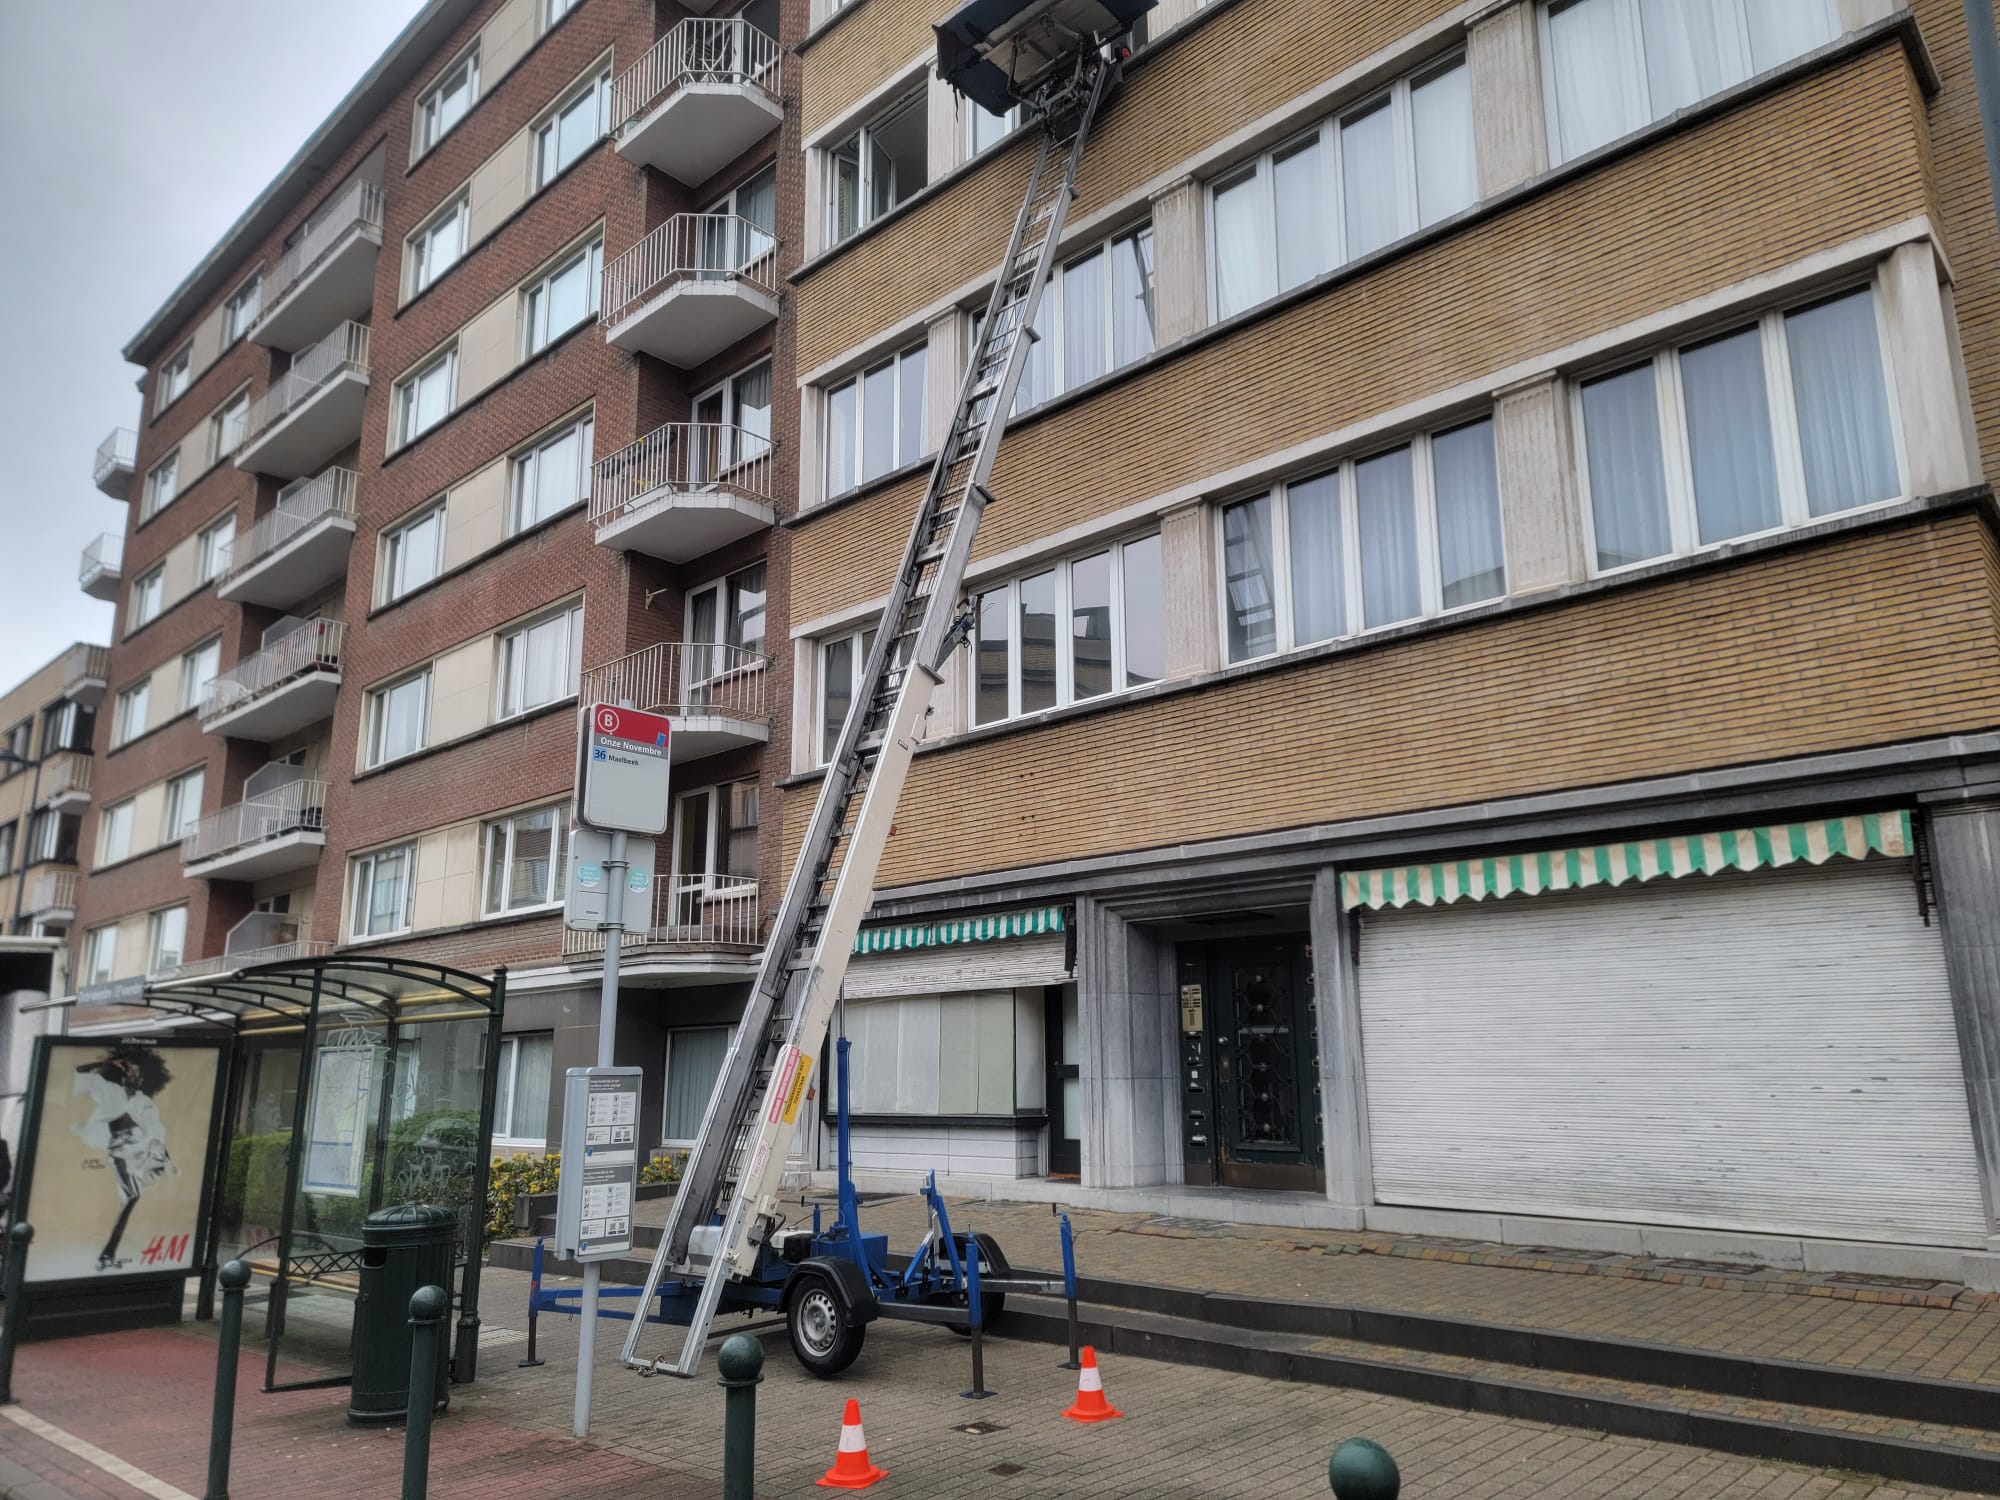 ladderlift huren goedkoop Nossegem